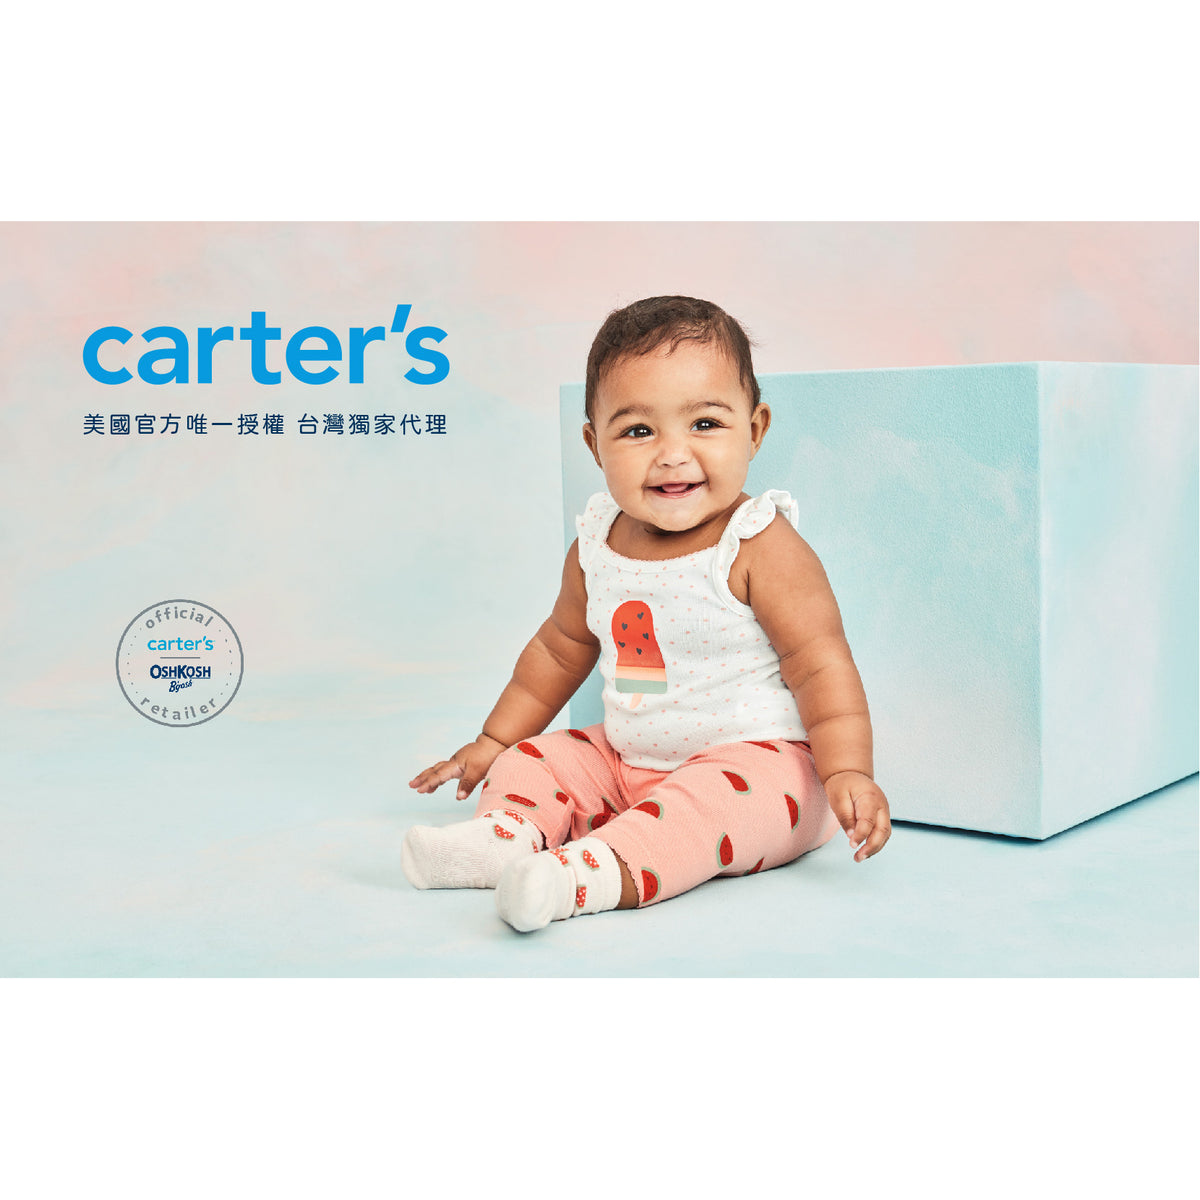 Carter's 水藍色可愛少女上衣(12M-24M)